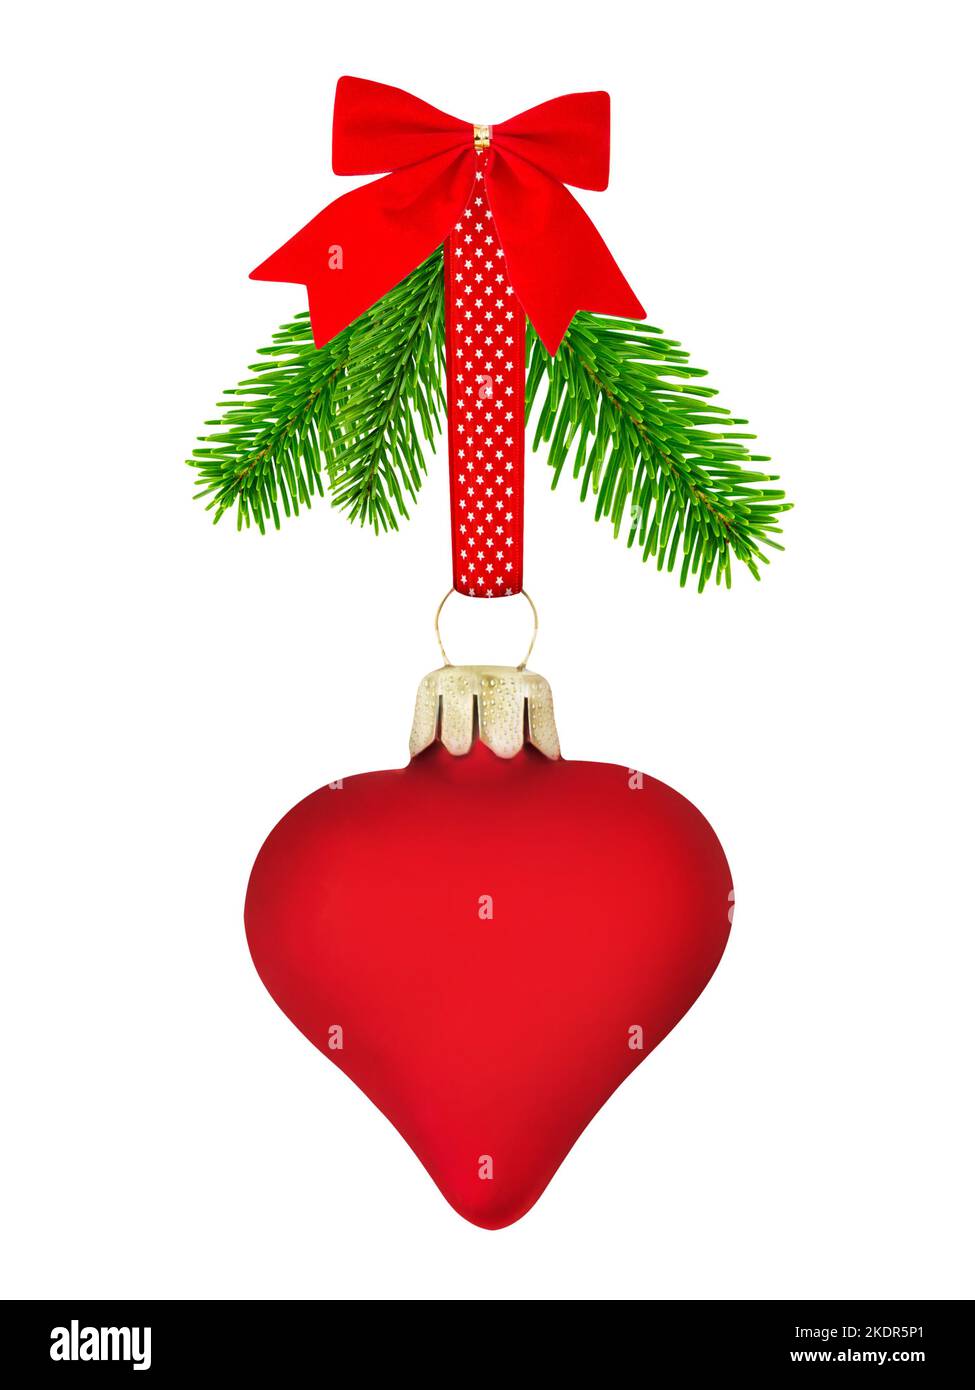 Decorazione natalizia con cuore rosso e rami di abete isolati su sfondo bianco Foto Stock